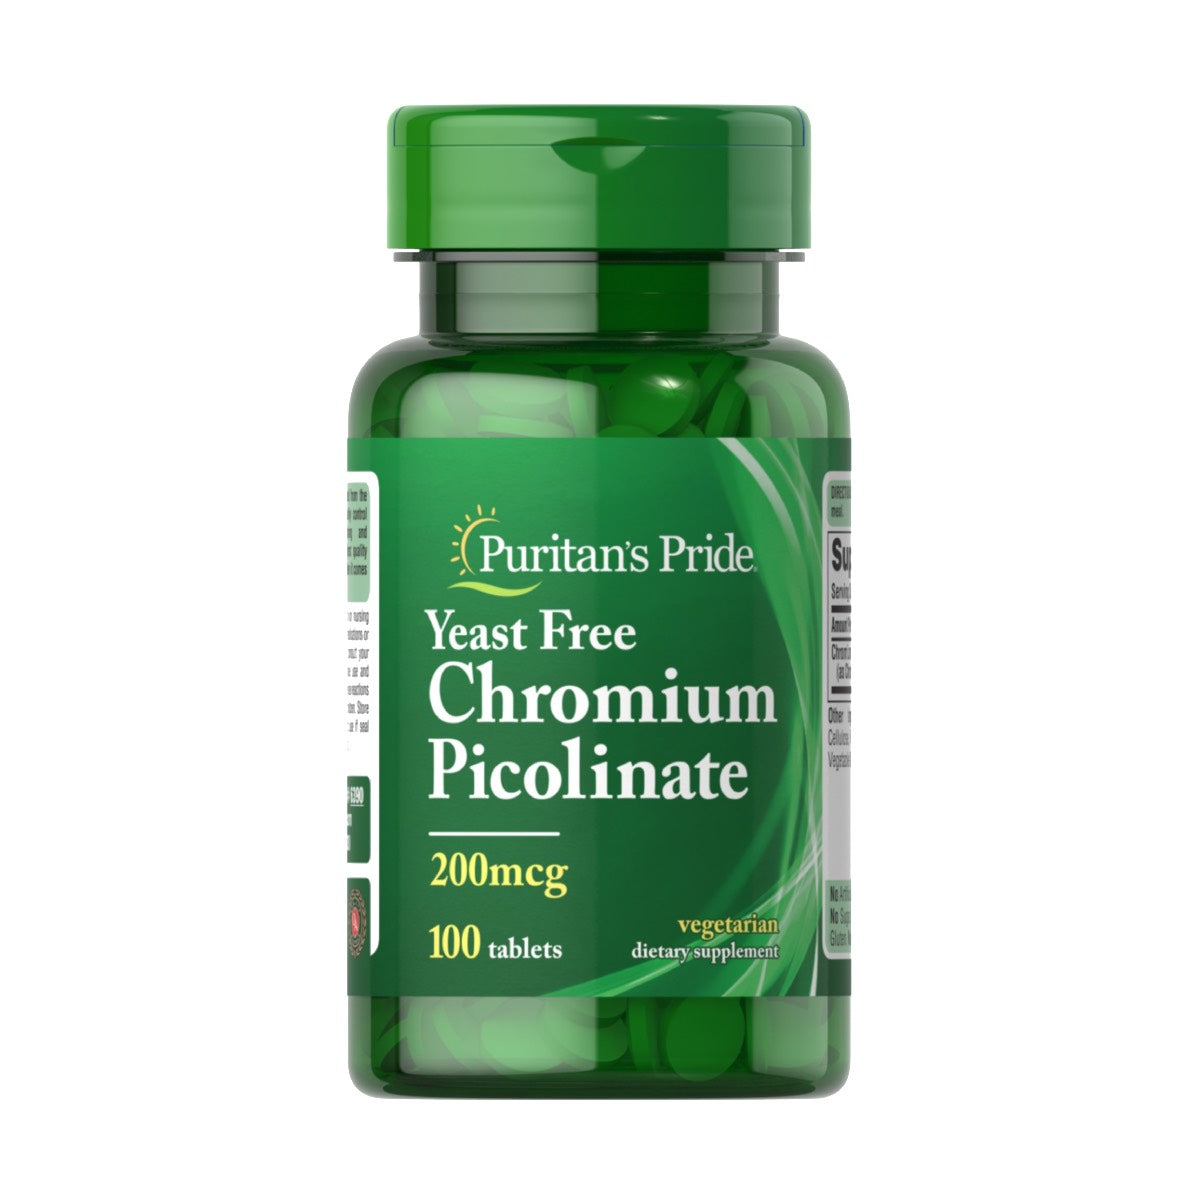 Puritan's Pride, Chromium Picolinate 200 mcg Yeast Free